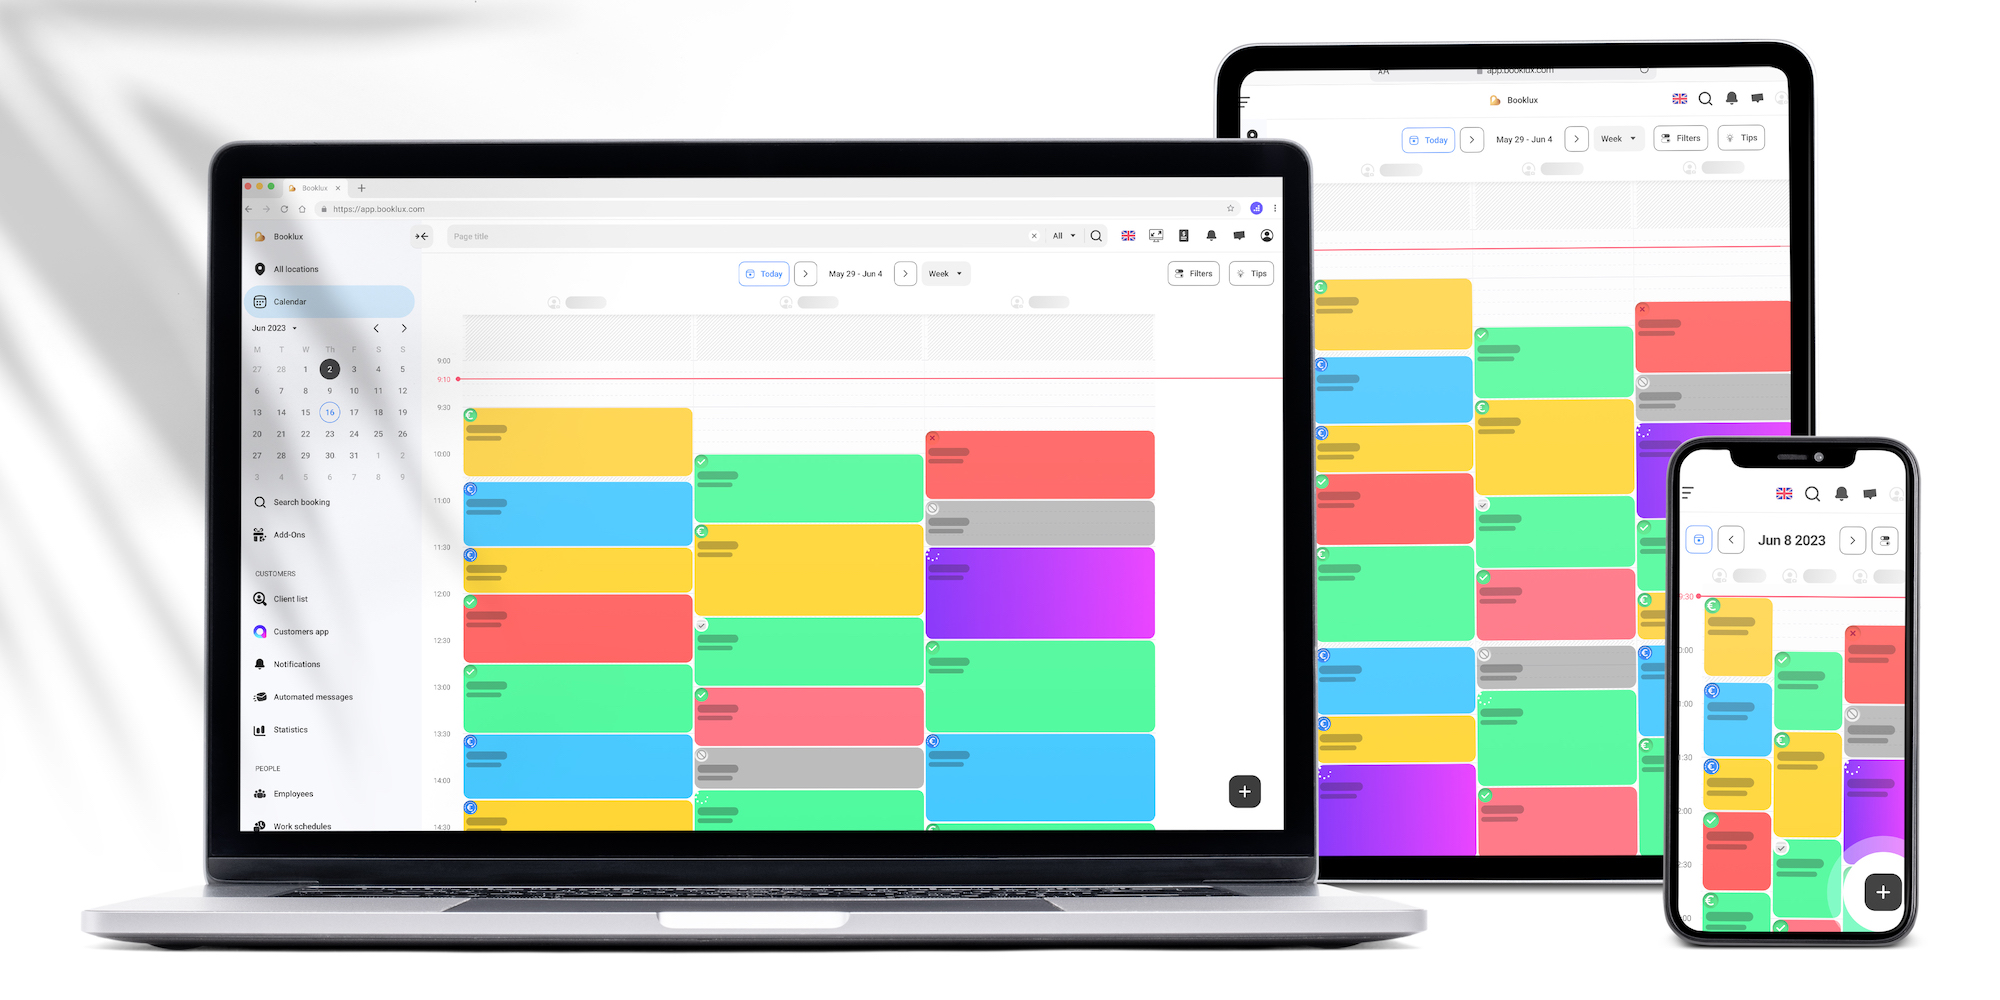 Il software di pianificazione degli appuntamenti di Booklux funziona perfettamente e in modo sicuro con dispositivi Windows, macOS, iOS e Android.